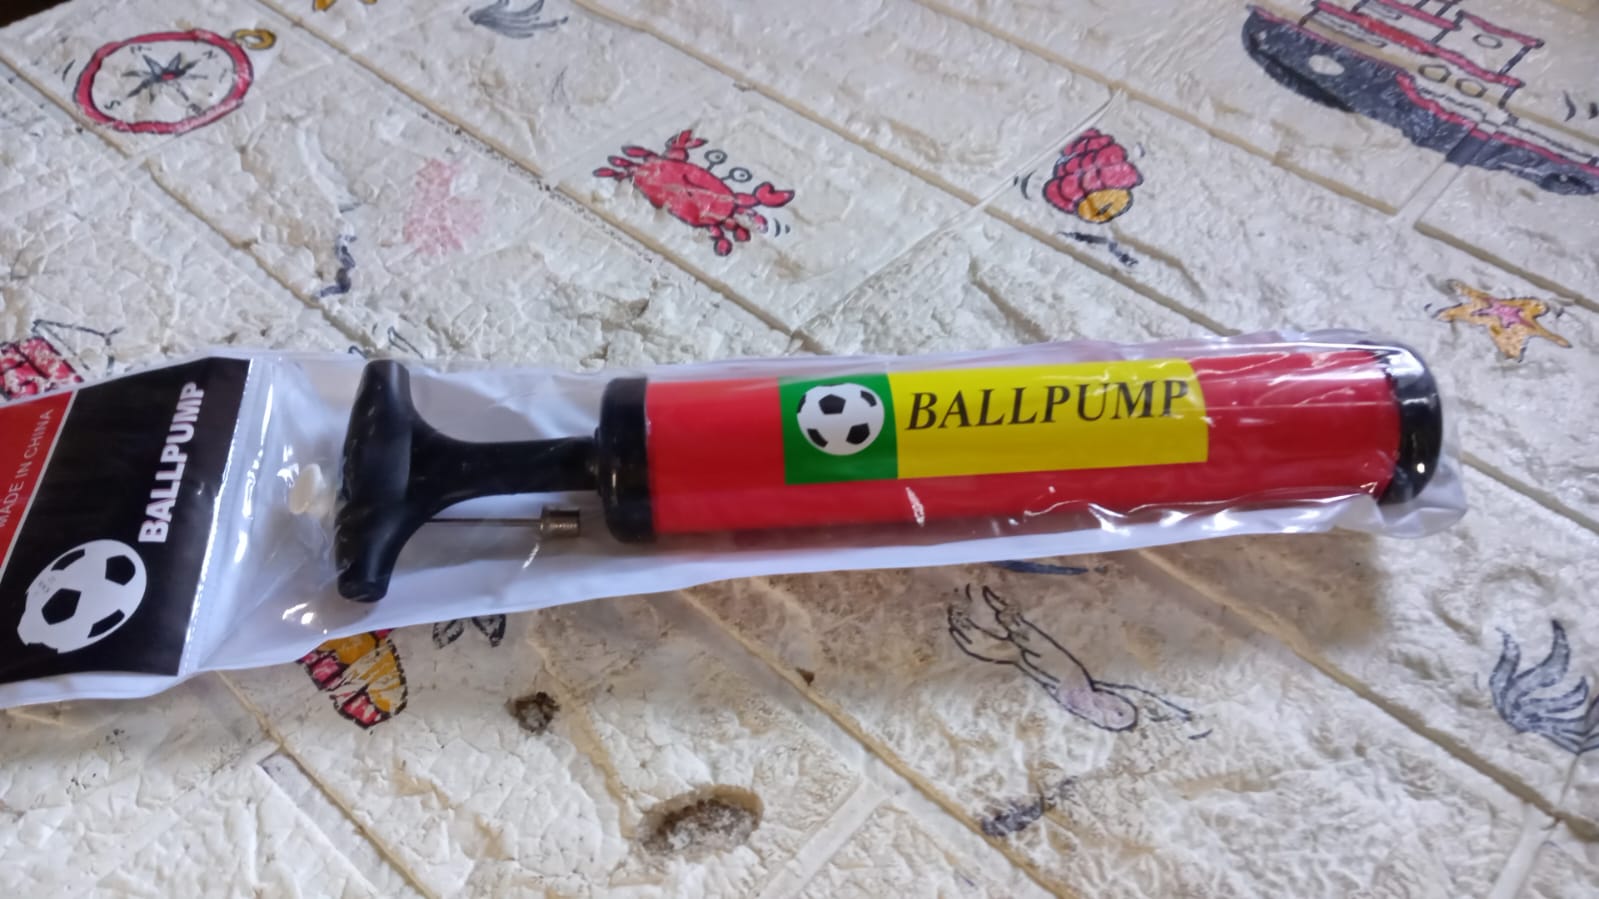 Inflator Air Ball Pump Soft Bouncing Ball Development Kids Toy, Sports Plastic Pump for Soccer, Basketball, Football, Volleyball Ball (24 CM & 33.5 Cm)